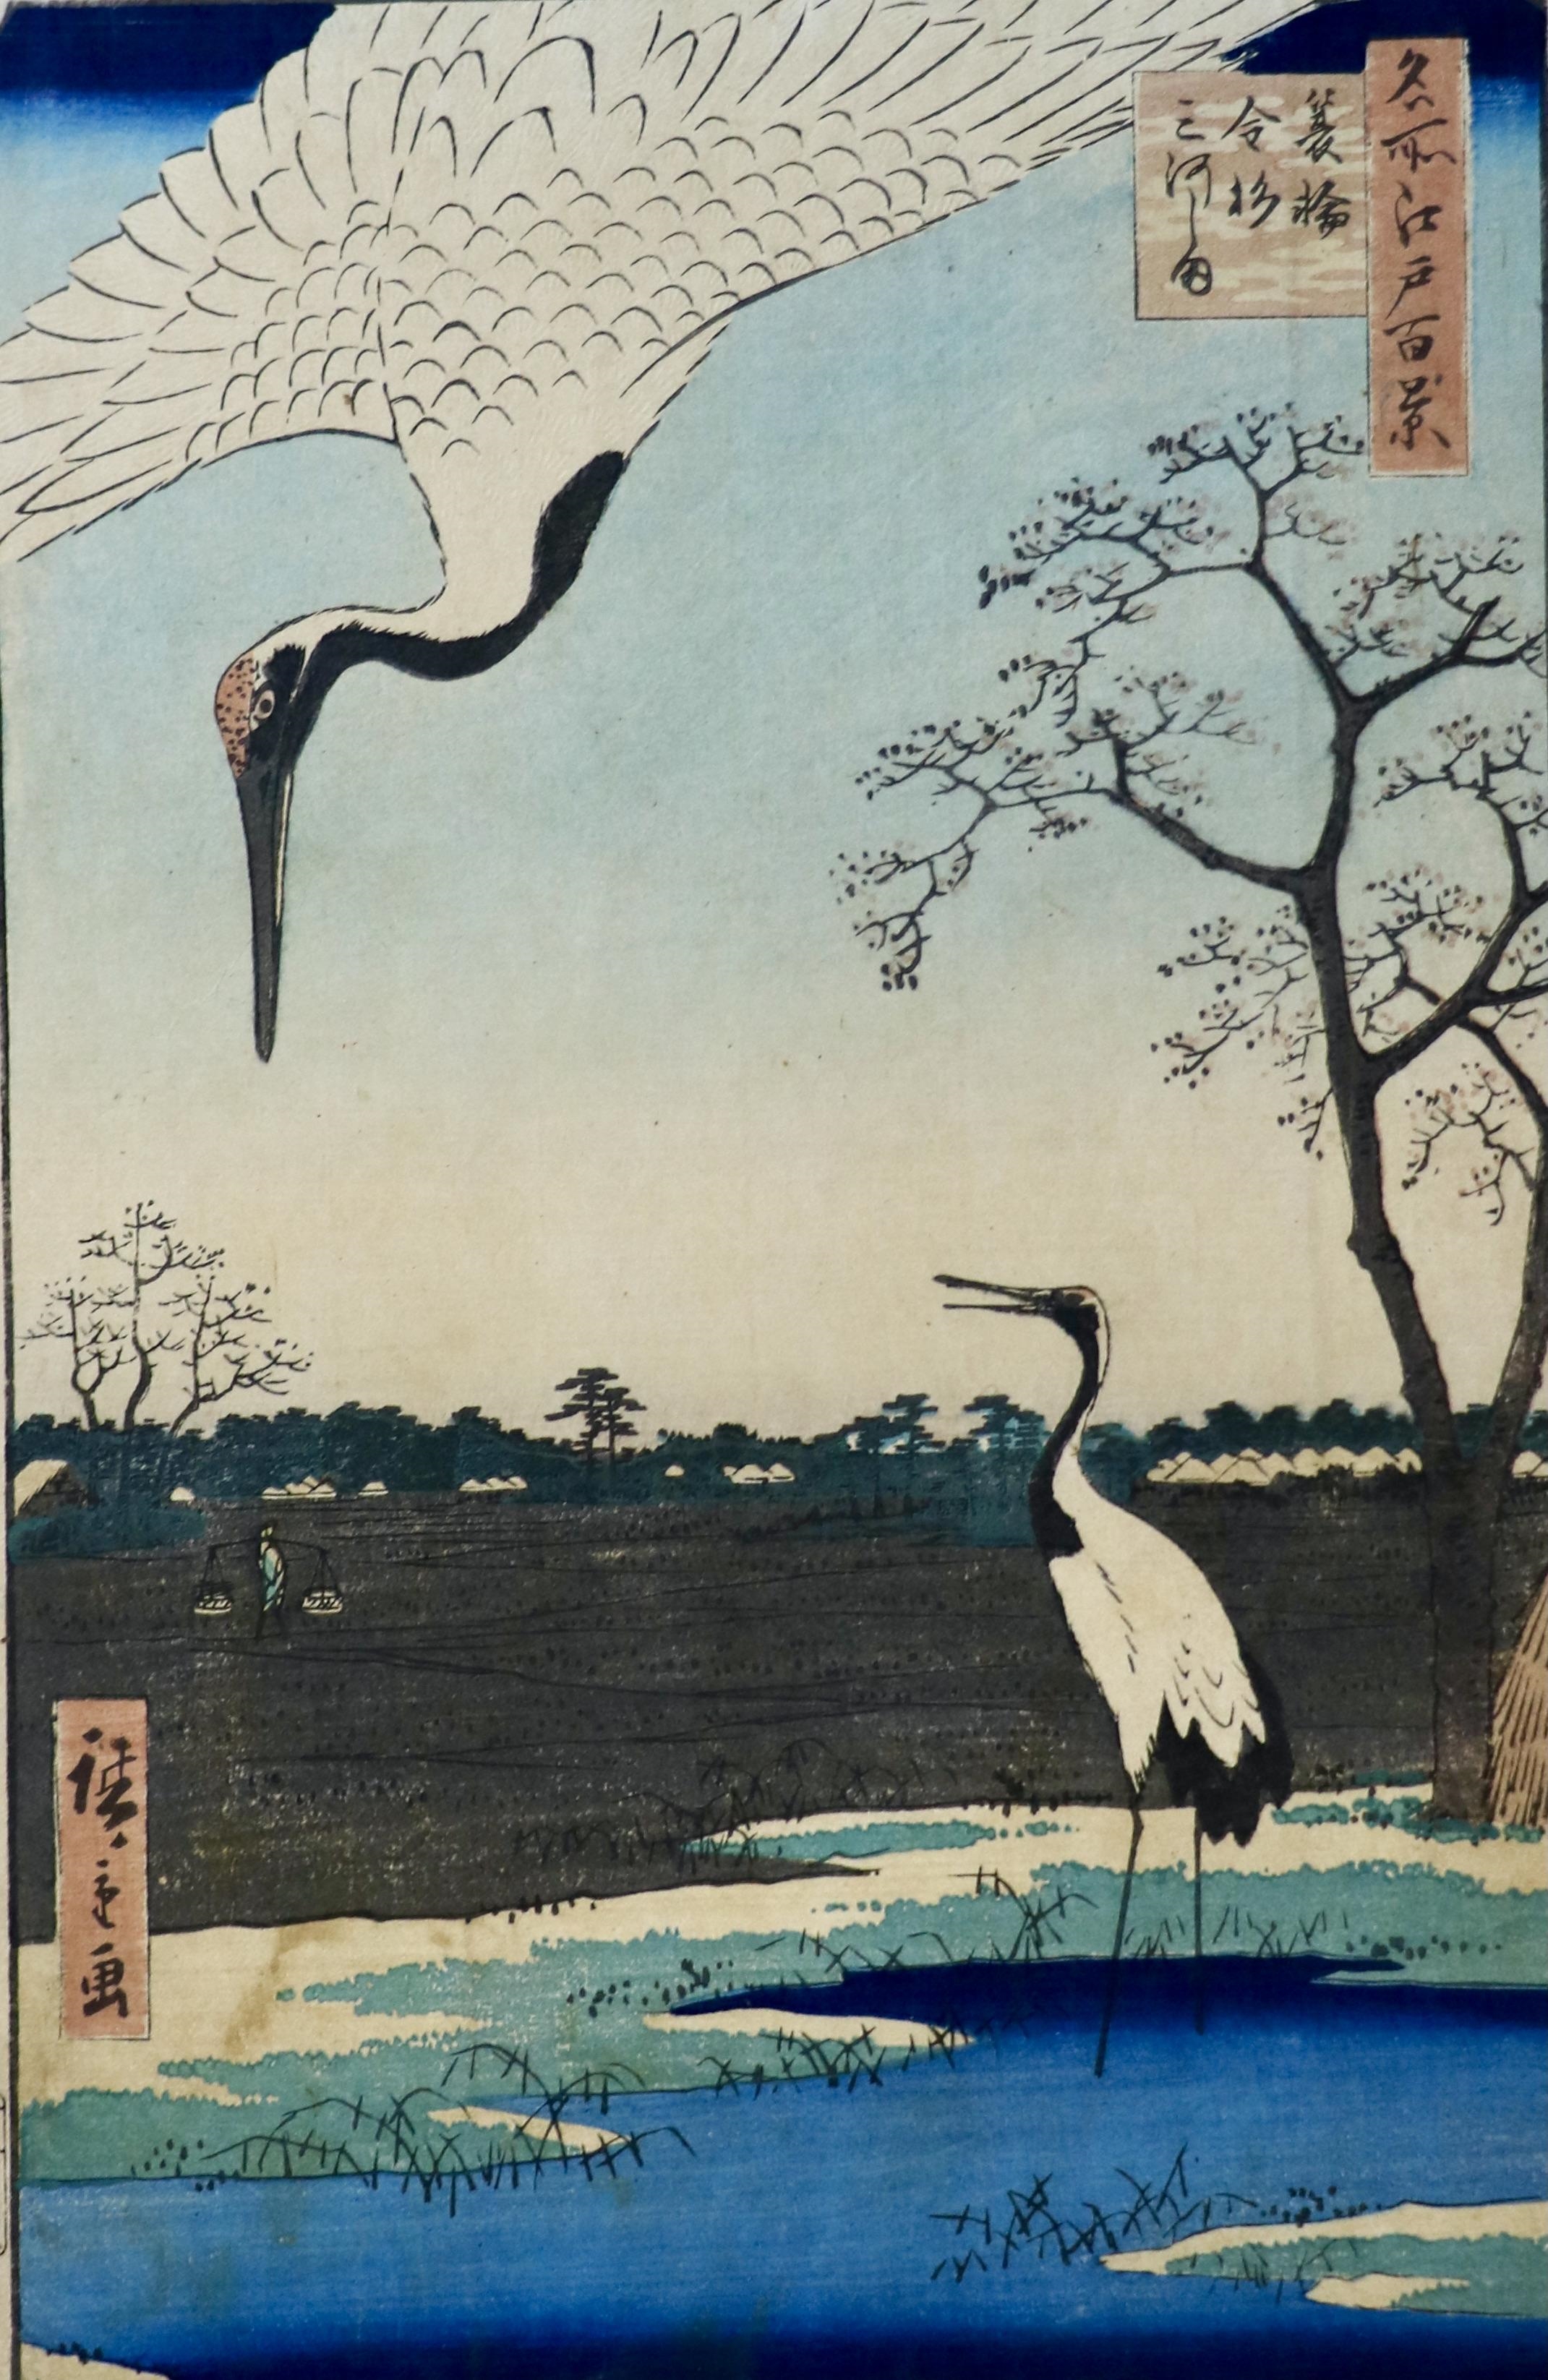 [JAPANESE PRINT] – HIROSHIGE, Utagawa (1797-1858). “Minowa Kanasugi Mikawashima” (Villages Minowa, Kanasugi & Mikawashima). by Utagawa Hiroshige